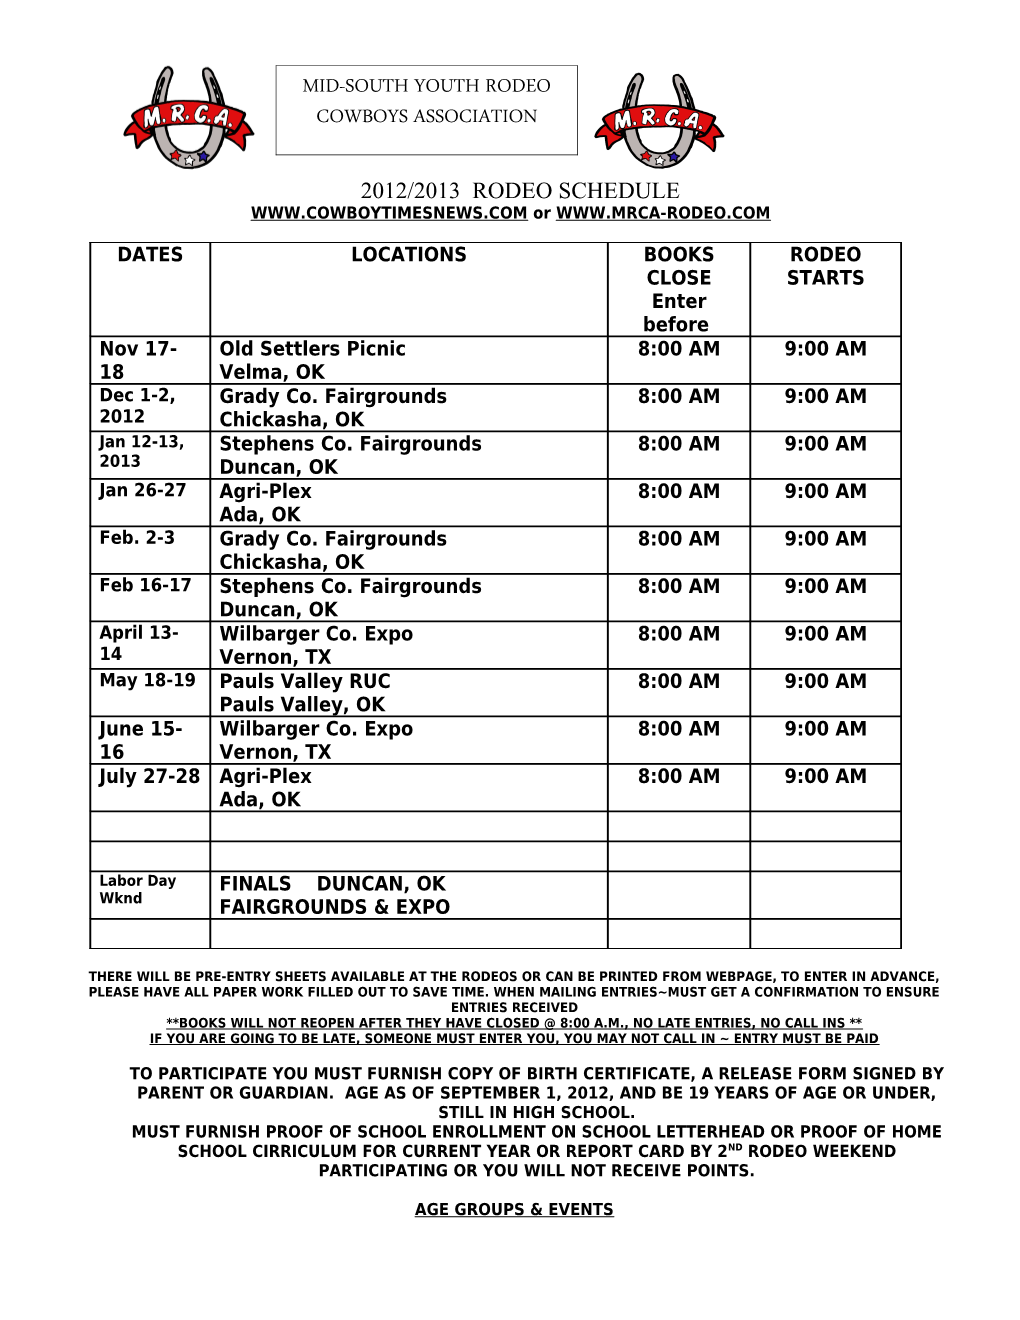 1999 Mrca Rodeo Schedule